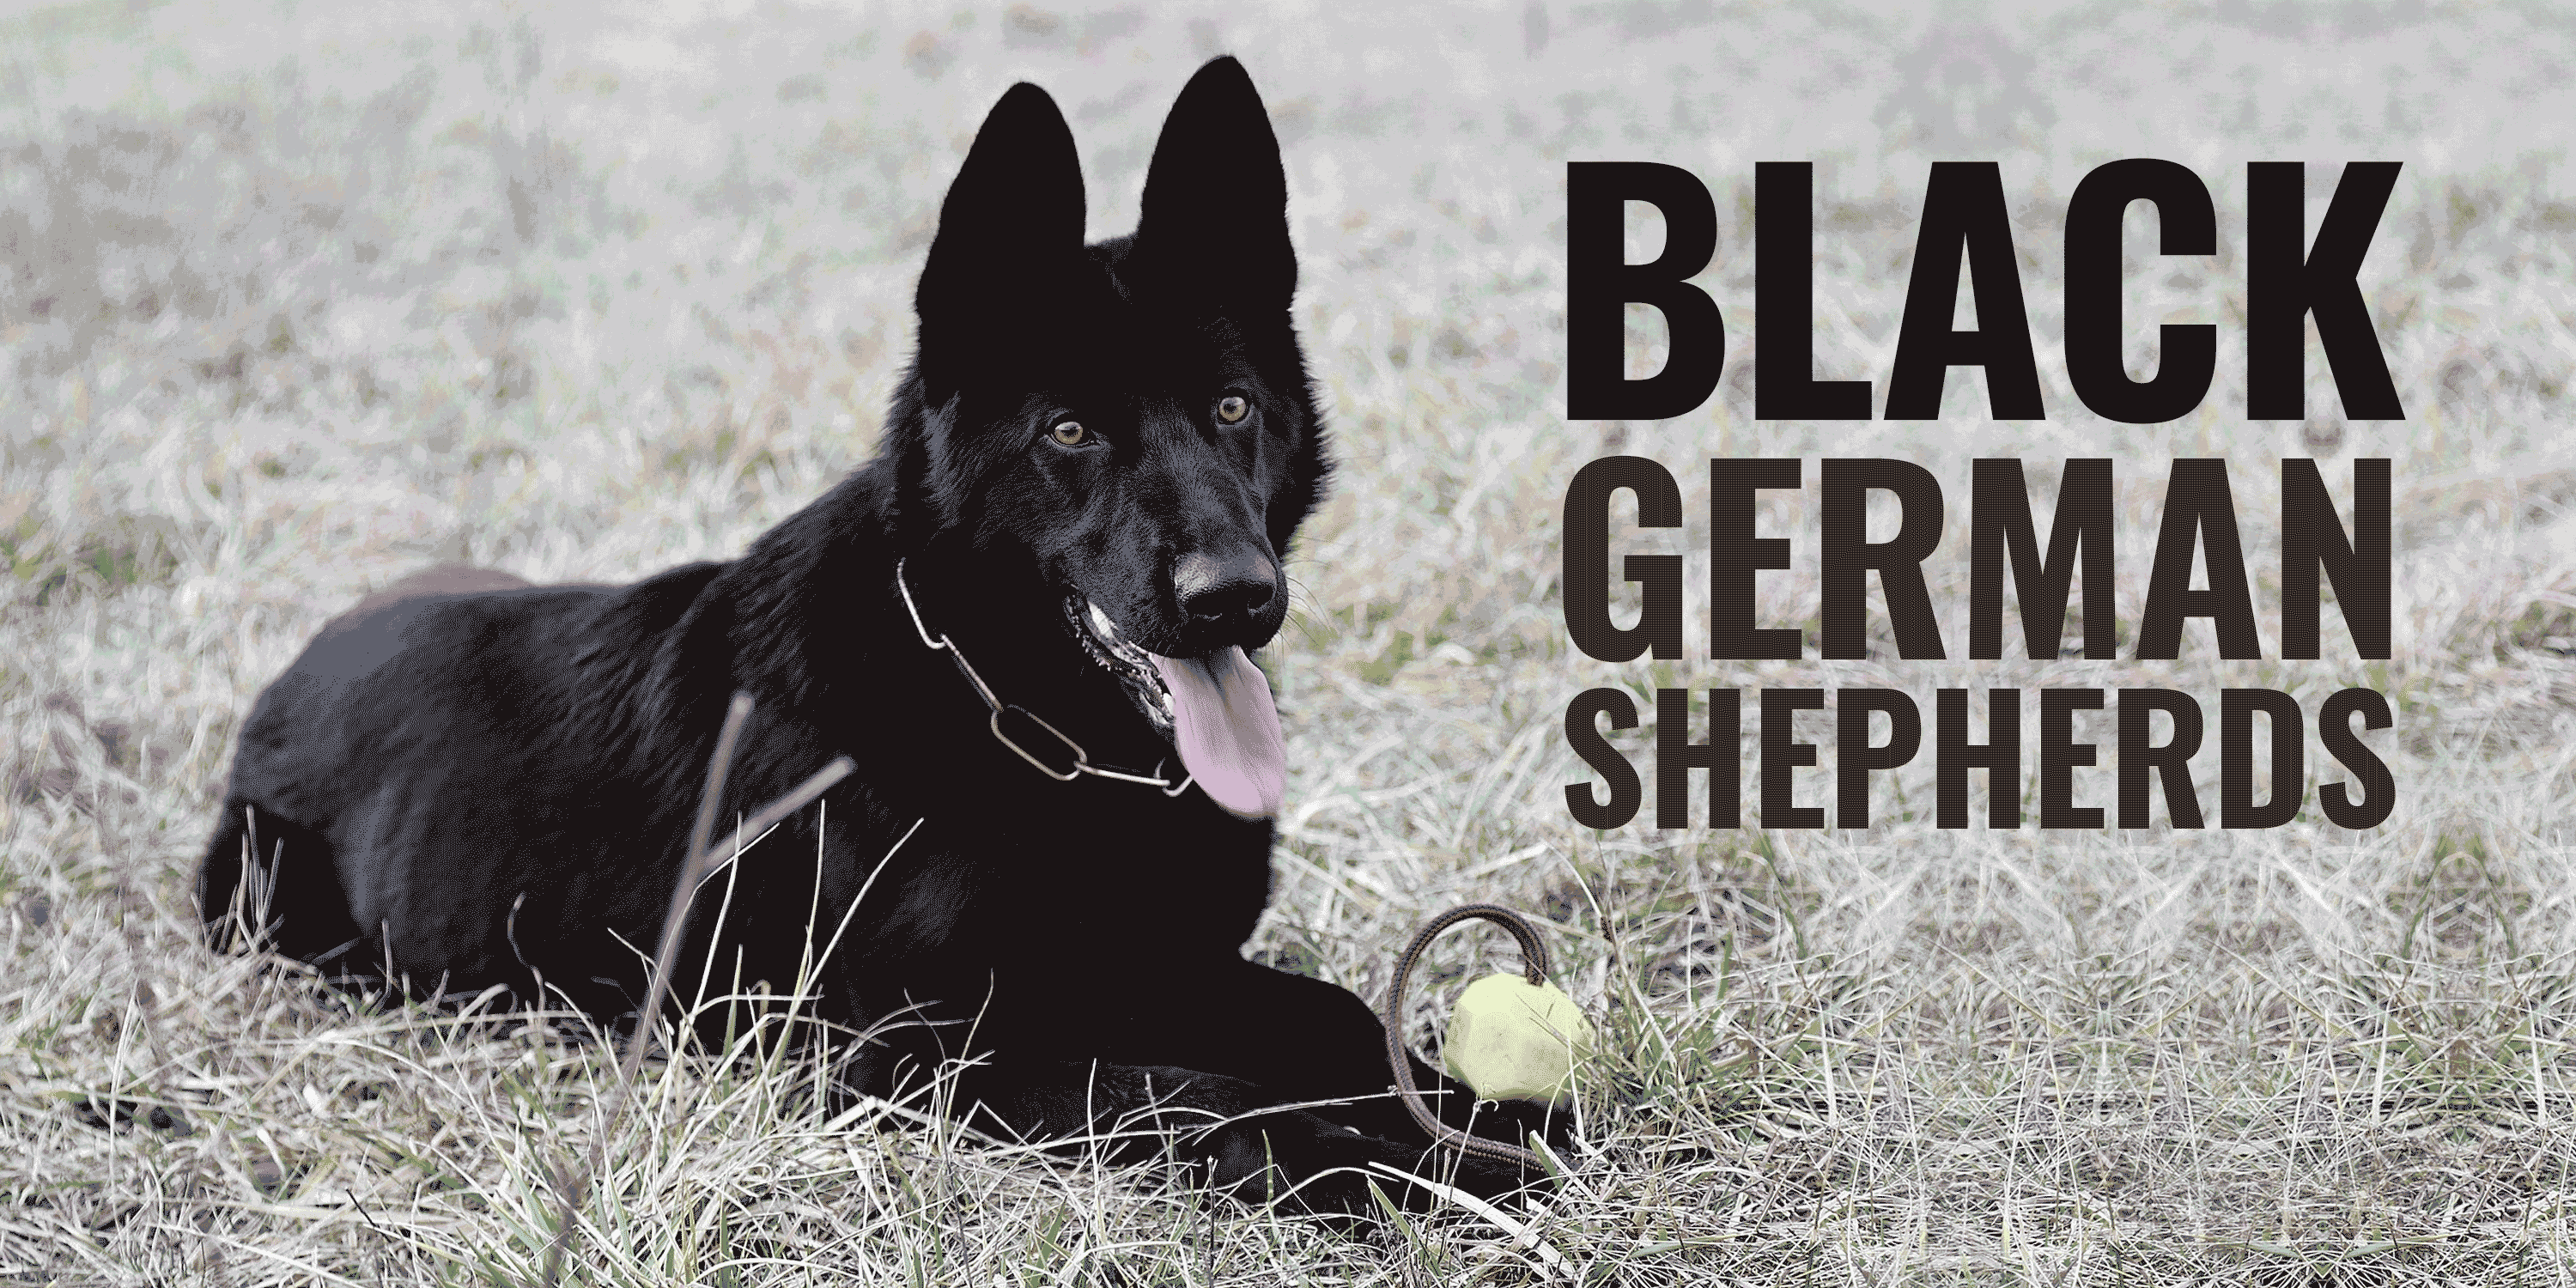 Black German Shepherds Genetics Prices Breeders Free Guide